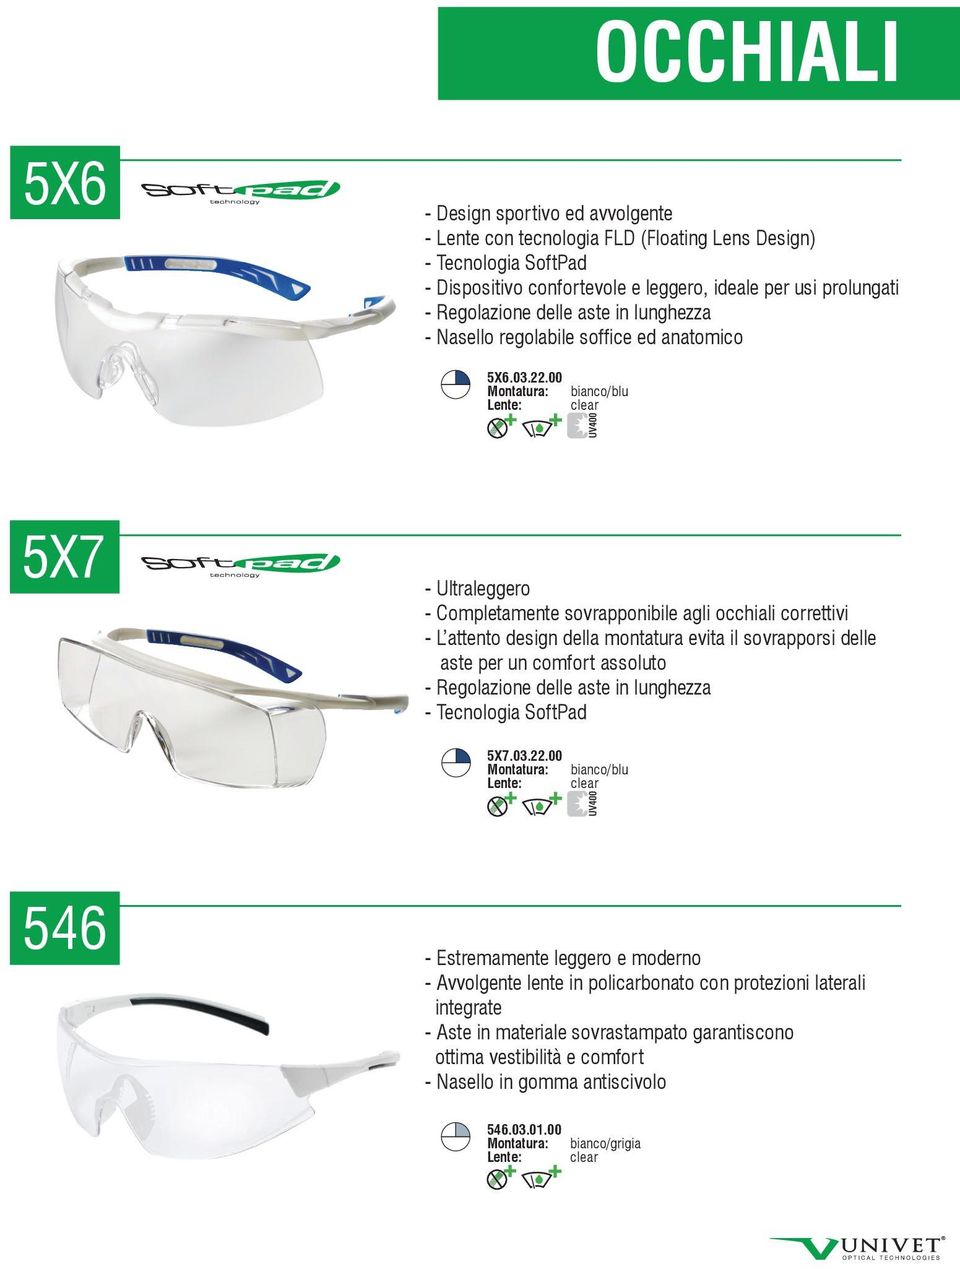 00 Montatura: bianco/blu 5X7 - Ultraleggero - Completamente sovrapponibile agli occhiali correttivi - L attento design della montatura evita il sovrapporsi delle aste per un comfort assoluto -